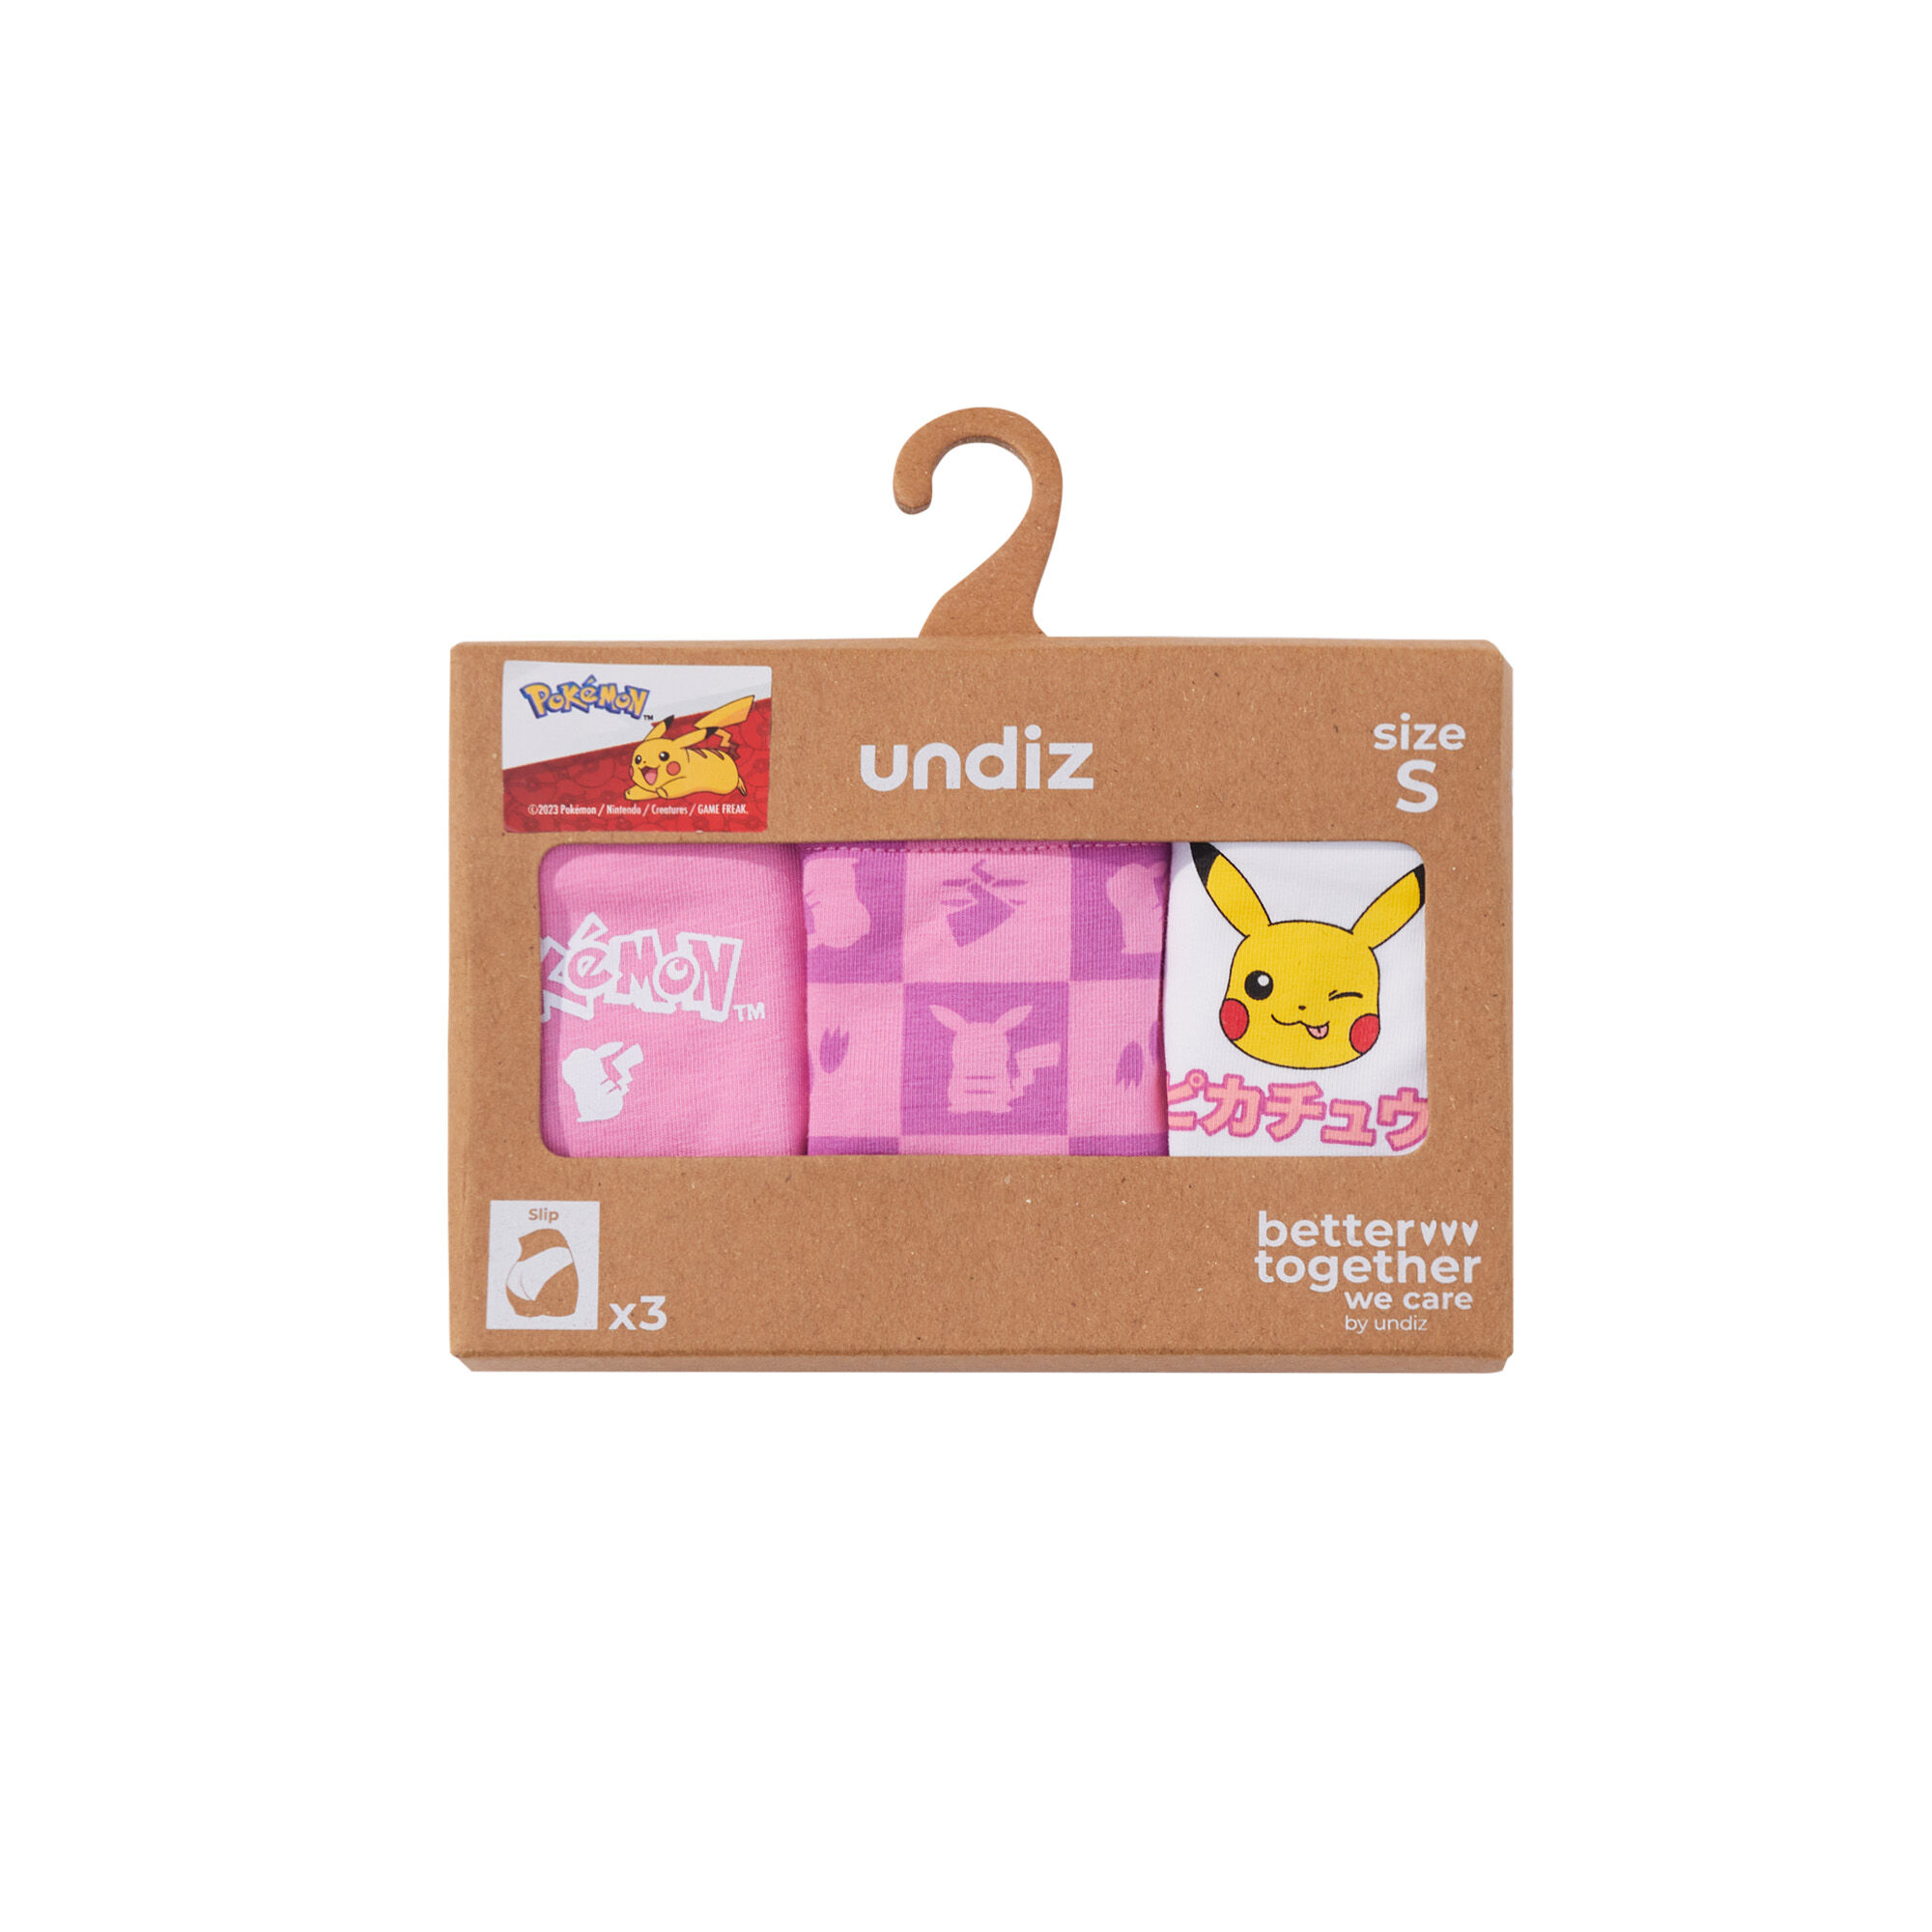 Pack of 3 Pikachu briefs - multicolored - Undiz